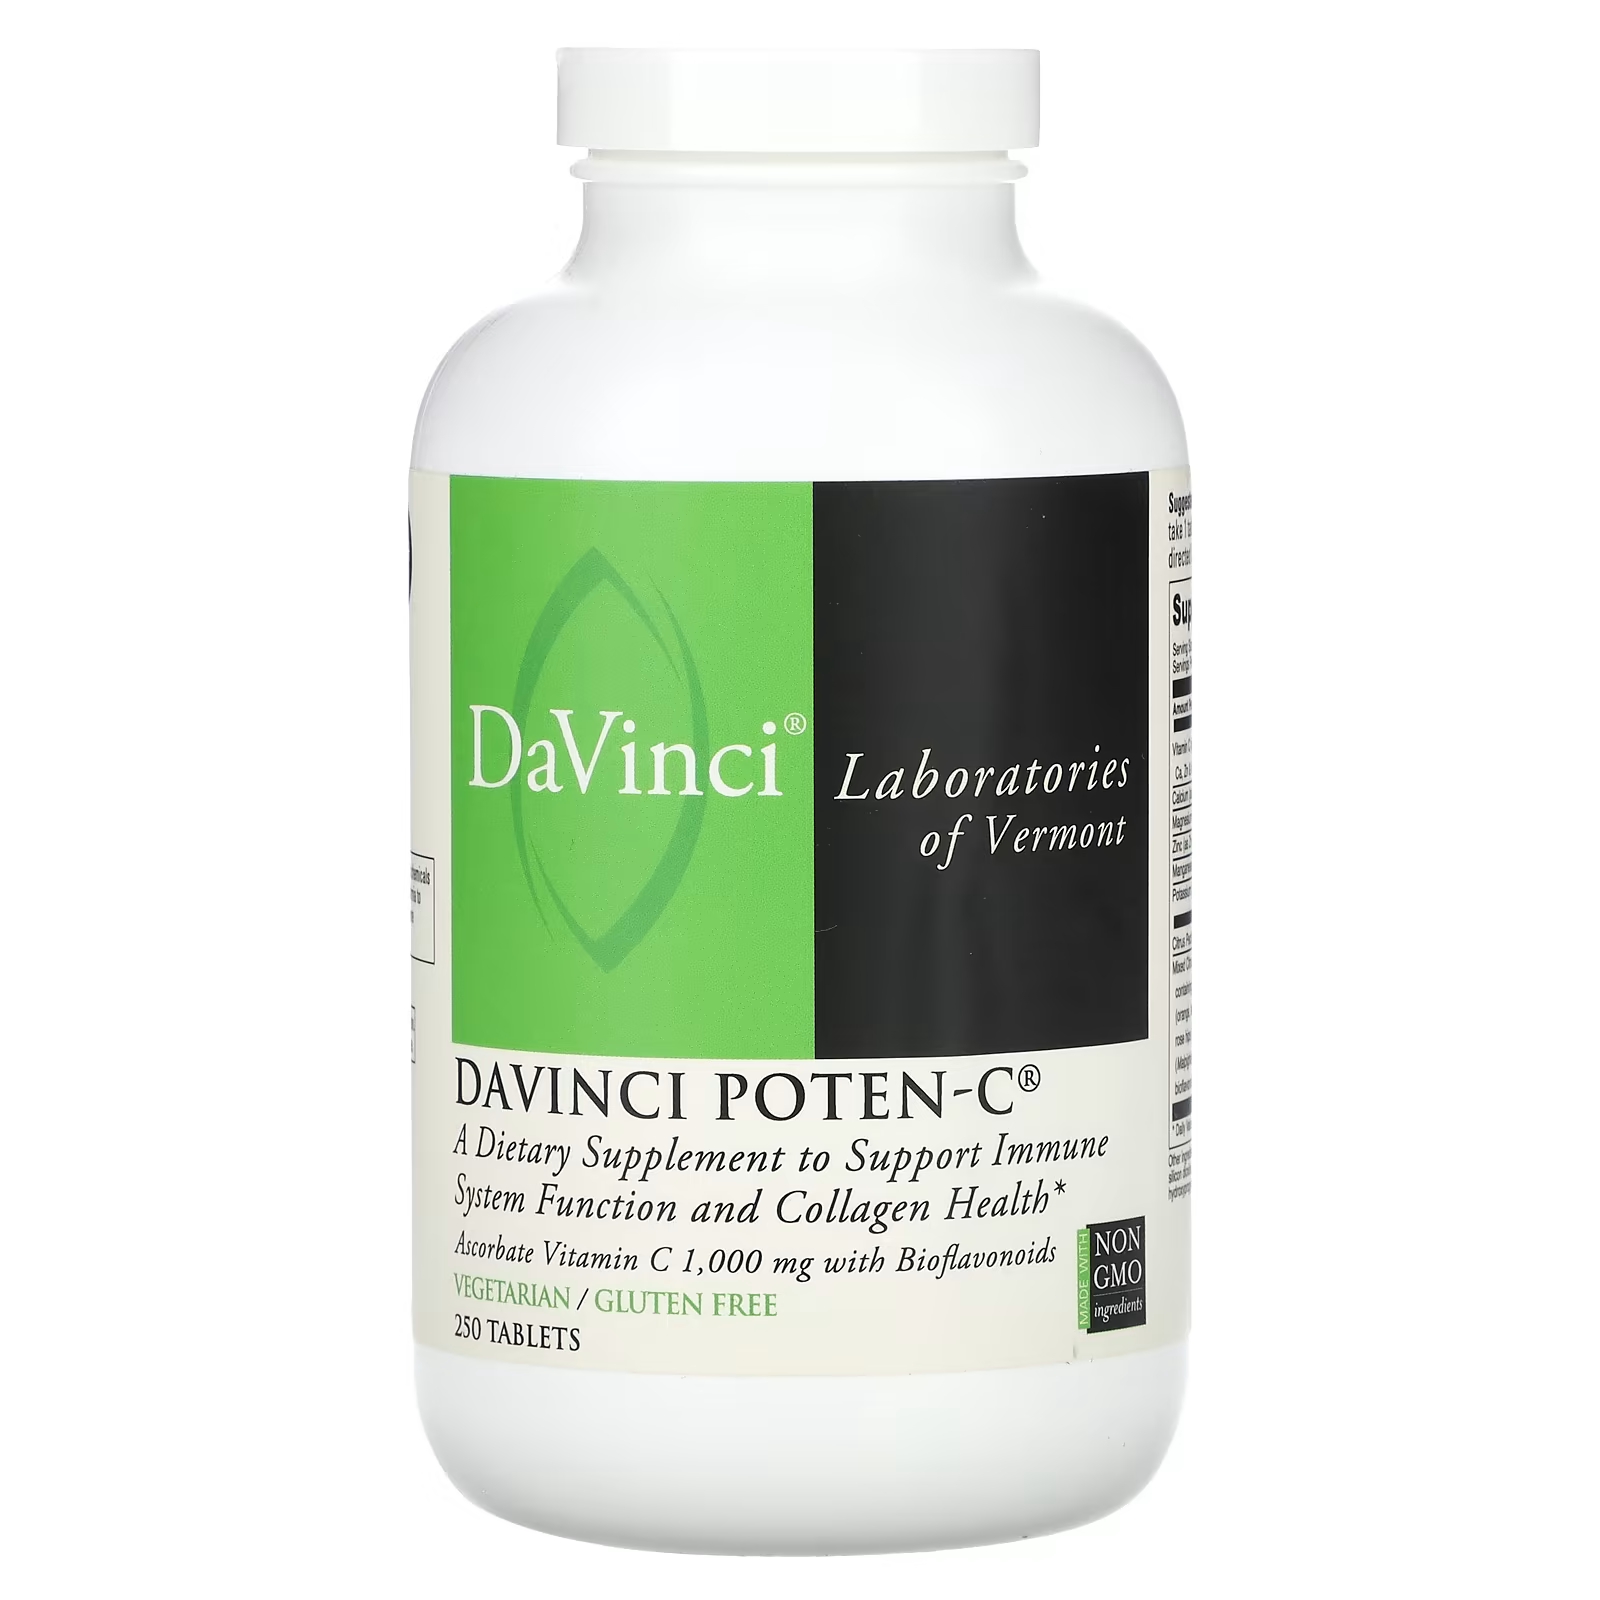 Пищевая добавка DaVinci Laboratories of Vermont Davinci Poten-C, 250 таблеток витамин c с цитрусовыми биофлавоноидами gnc 1000 мг 90 капсул